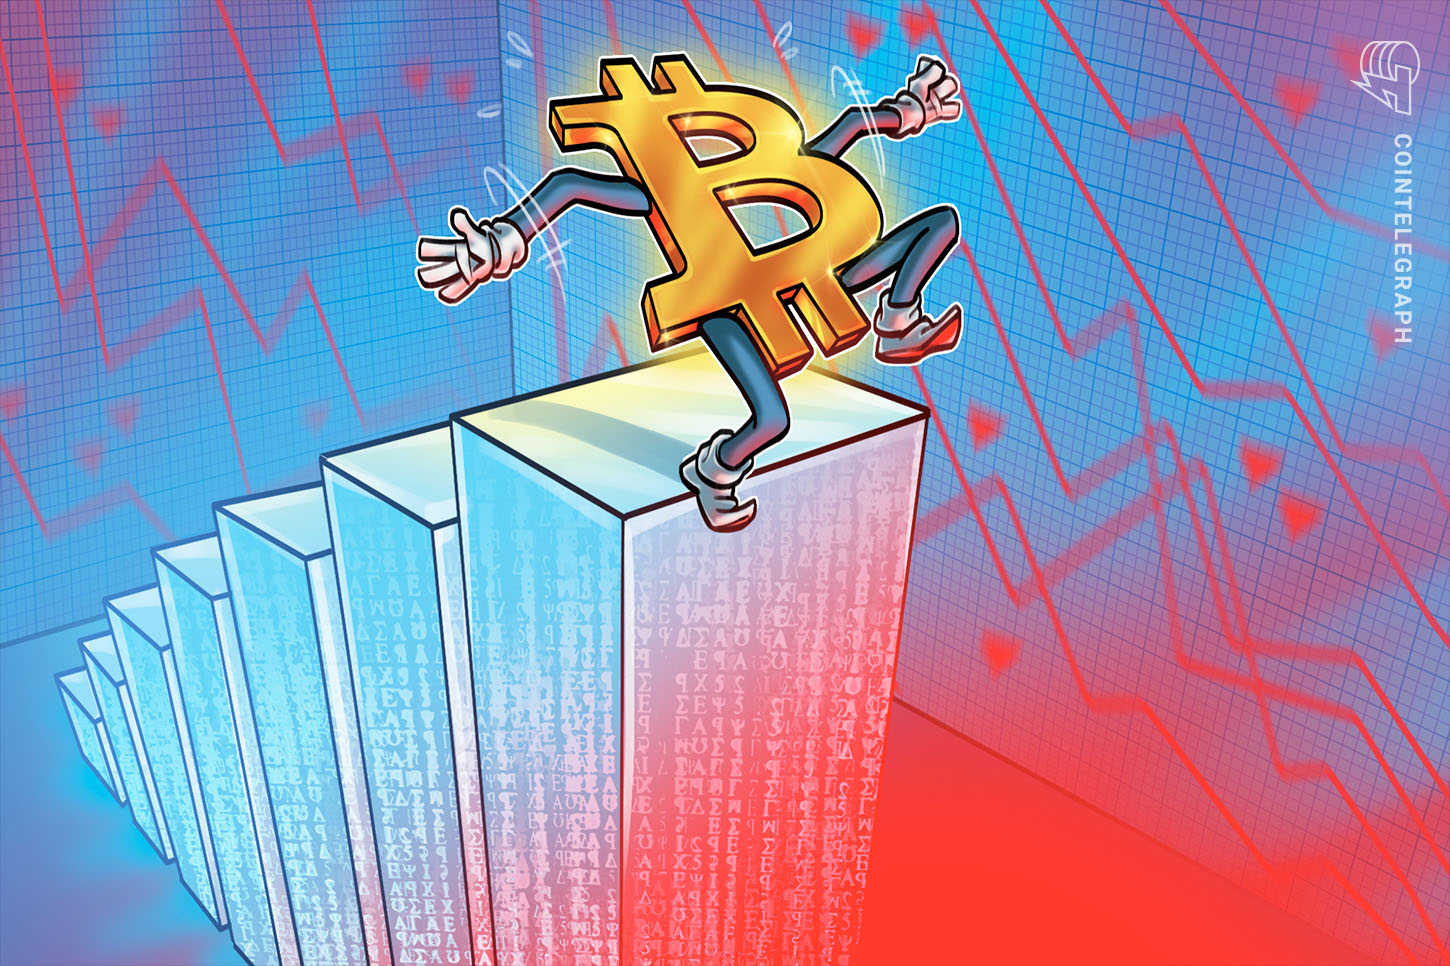 Chỉ số giá Bitcoin giảm xuống mức thấp nhất trong 2 tuần - Thị trường bò Bitcoin đã kết thúc?